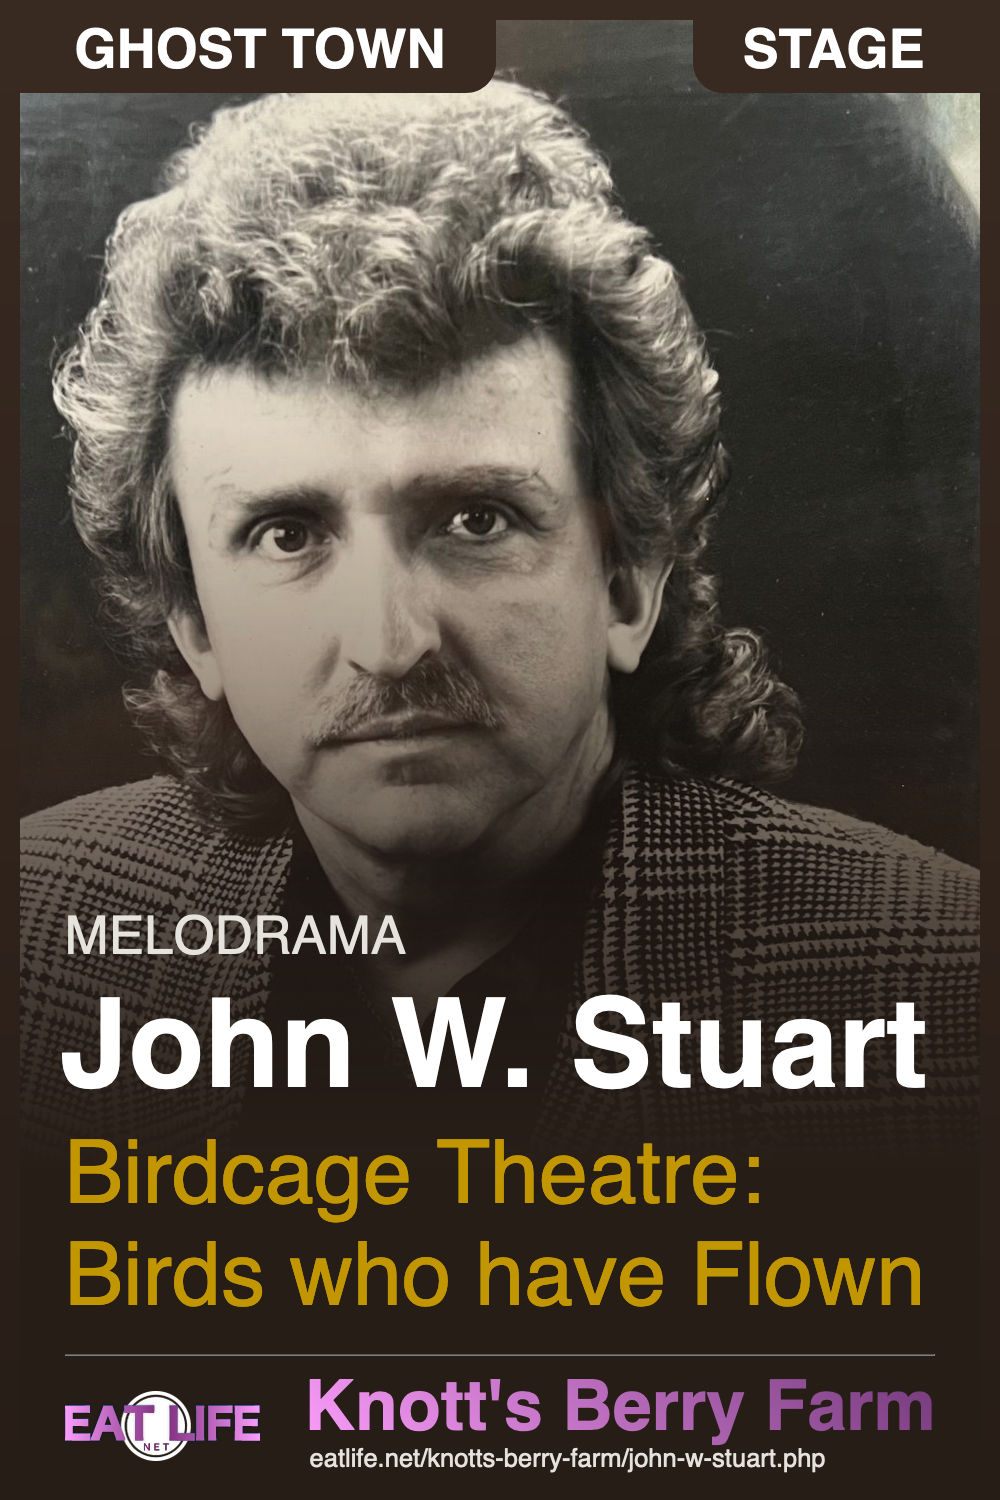 John W. Stuart